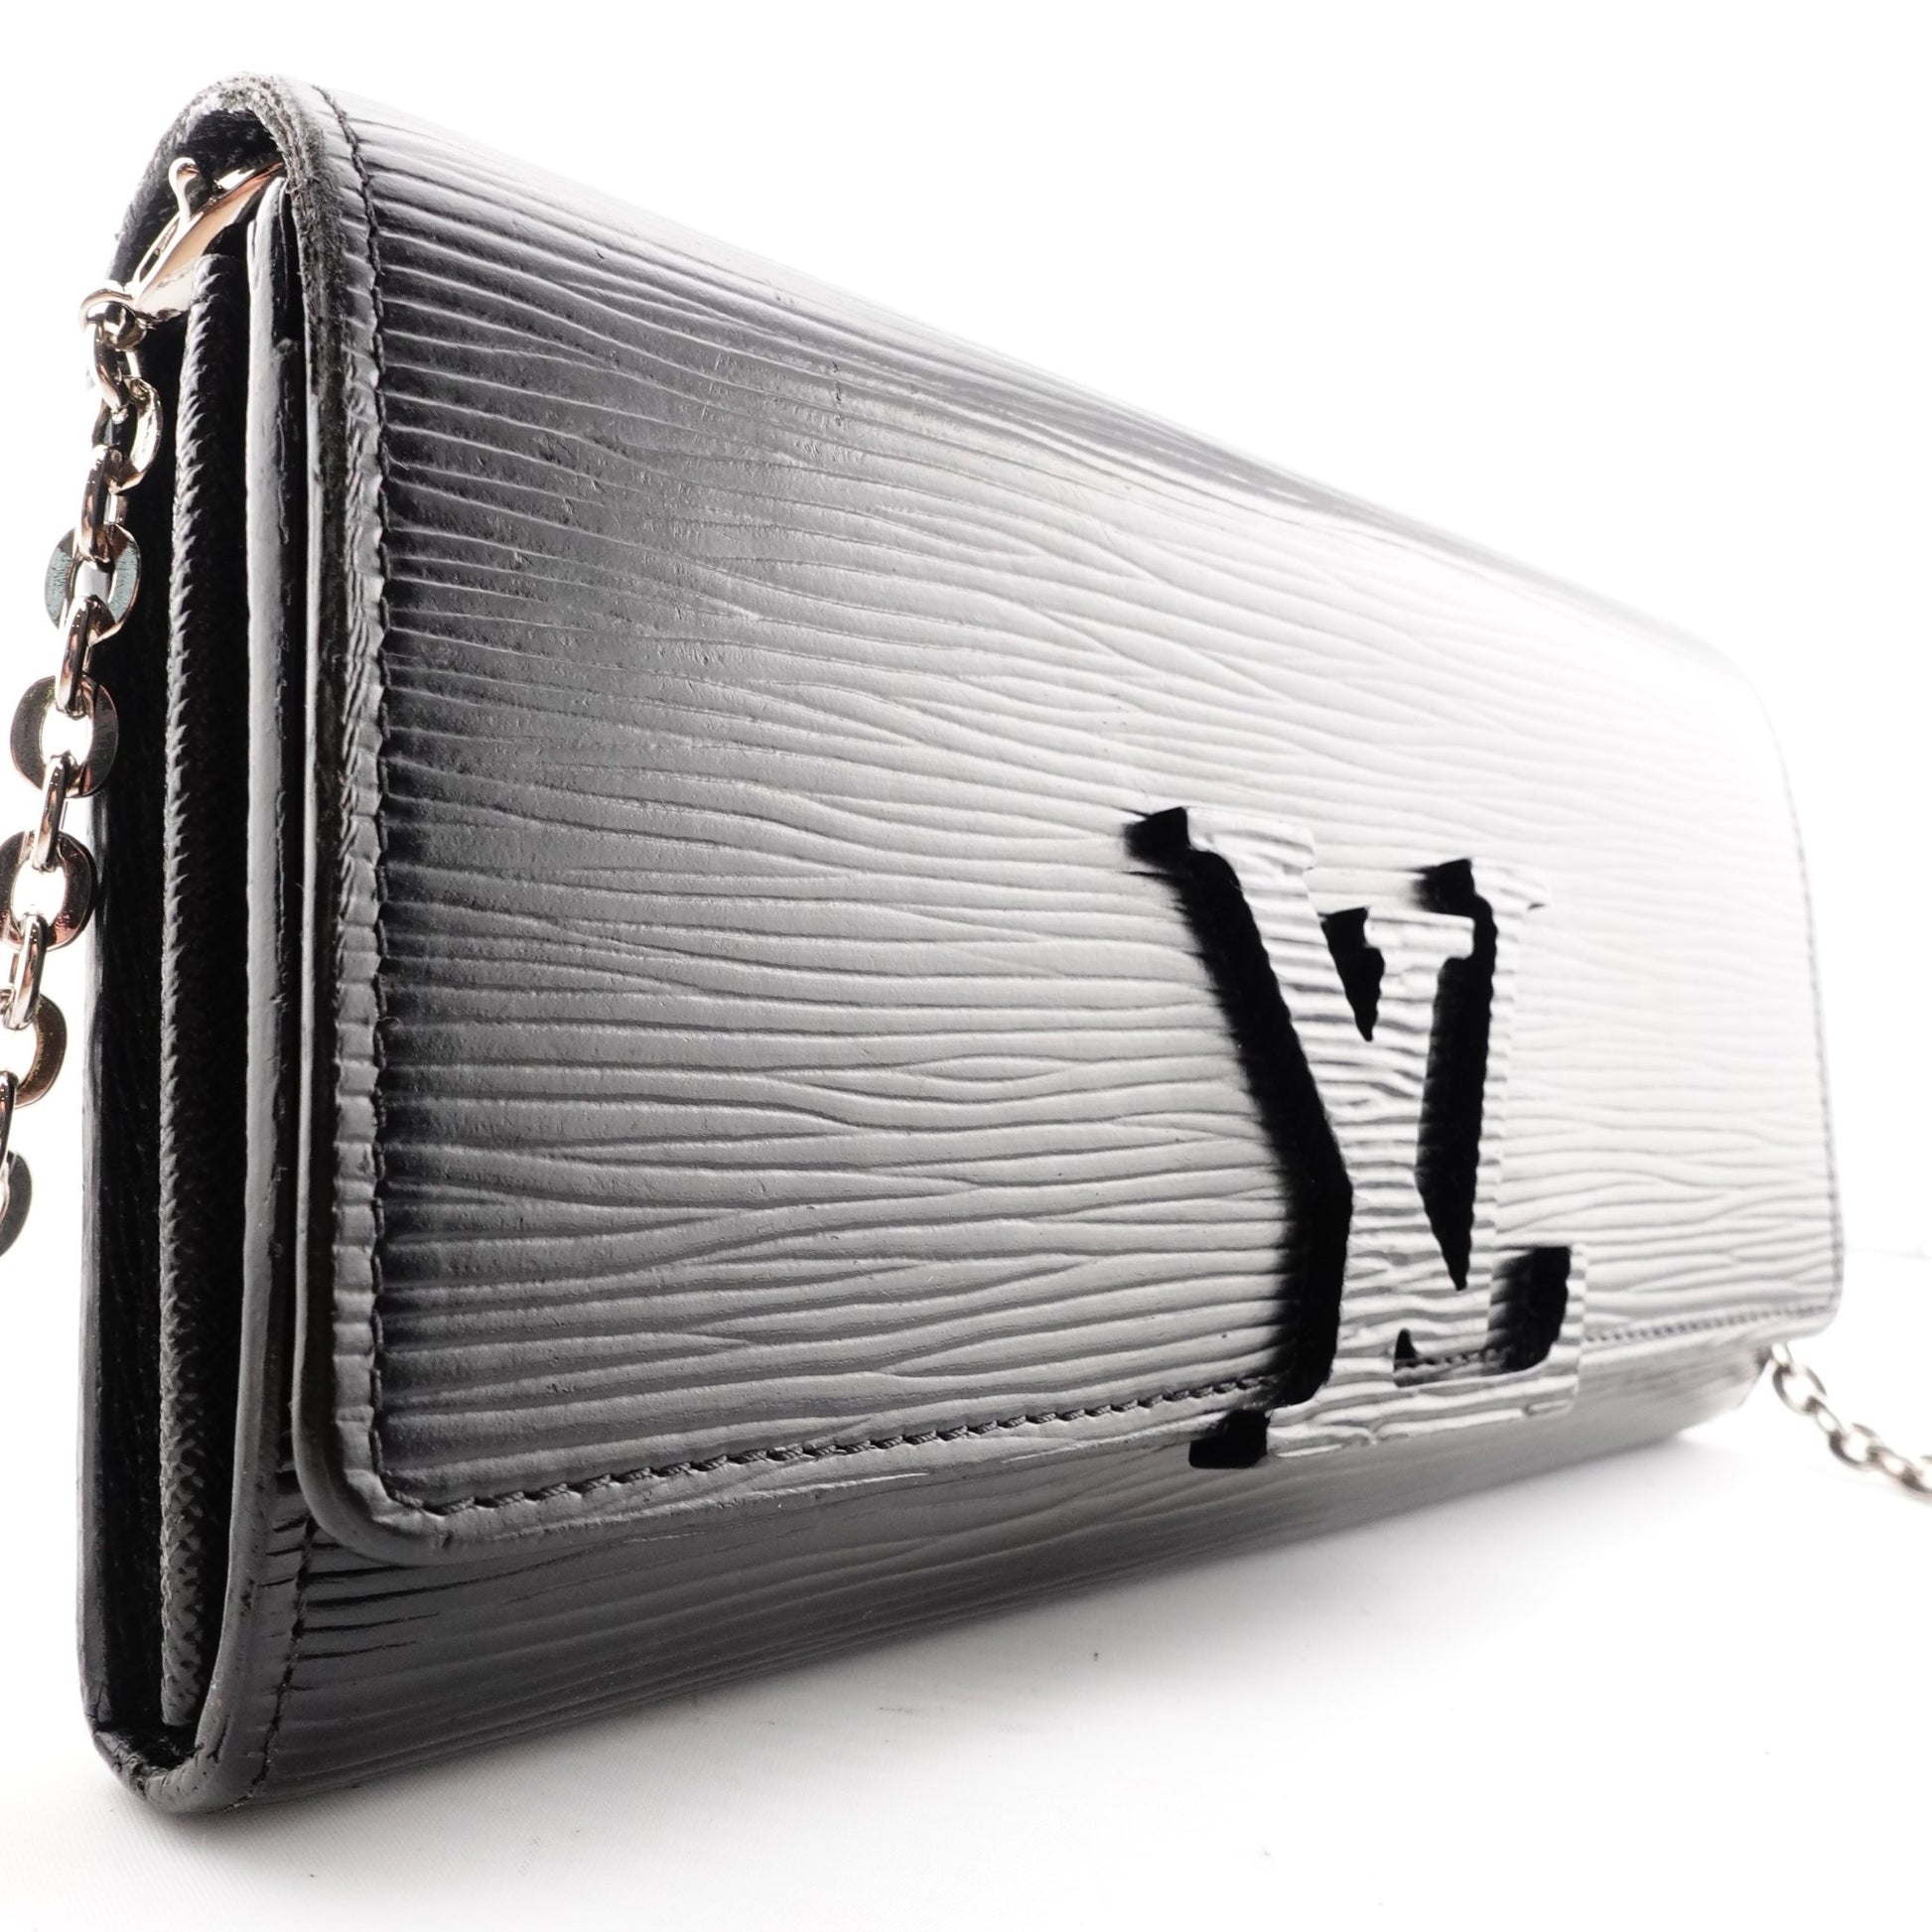 LOUIS VUITTON Epi Capucines Leather Wallet on Chain - Bag Envy